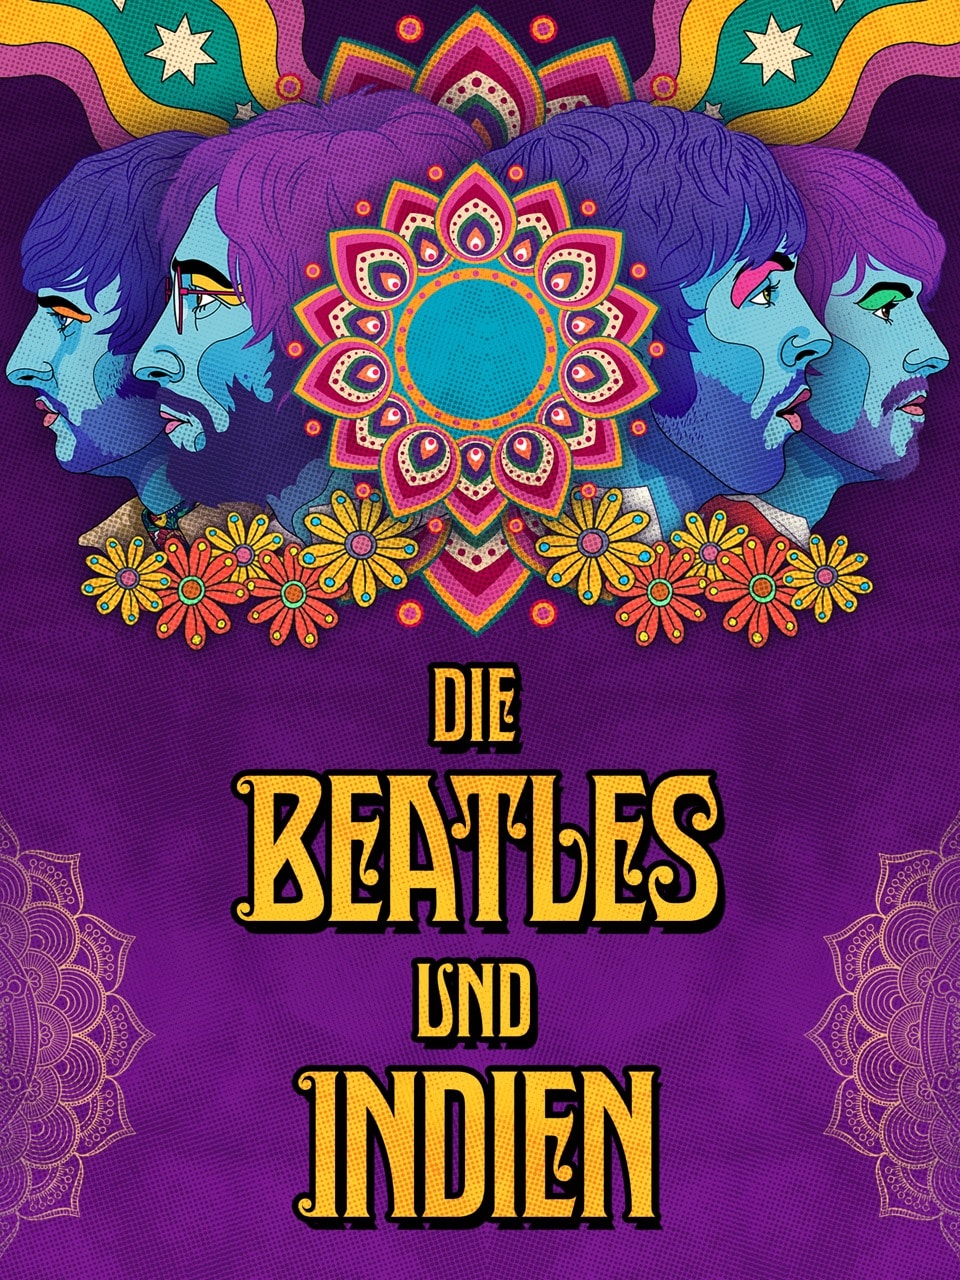 Die Beatles und Indien, Copyright: Pandastorm